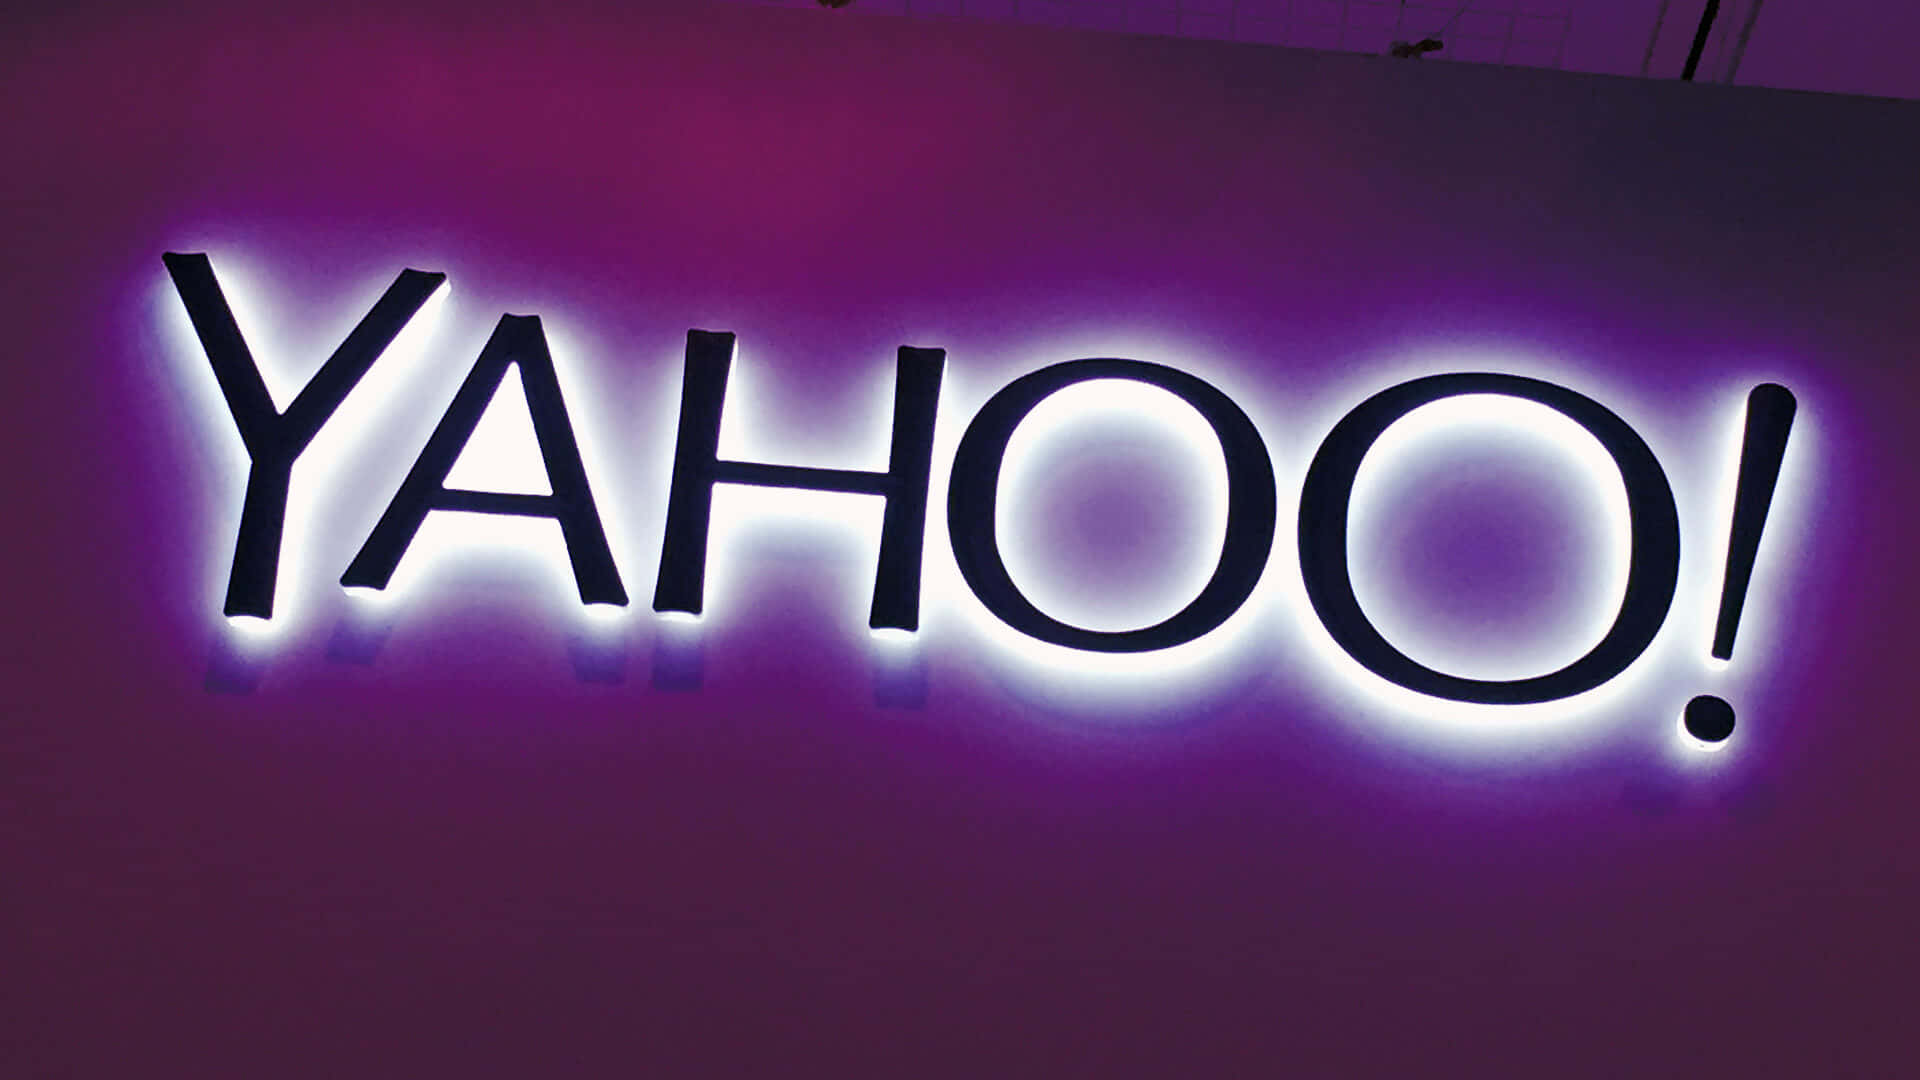 Welcome to Yahoo!